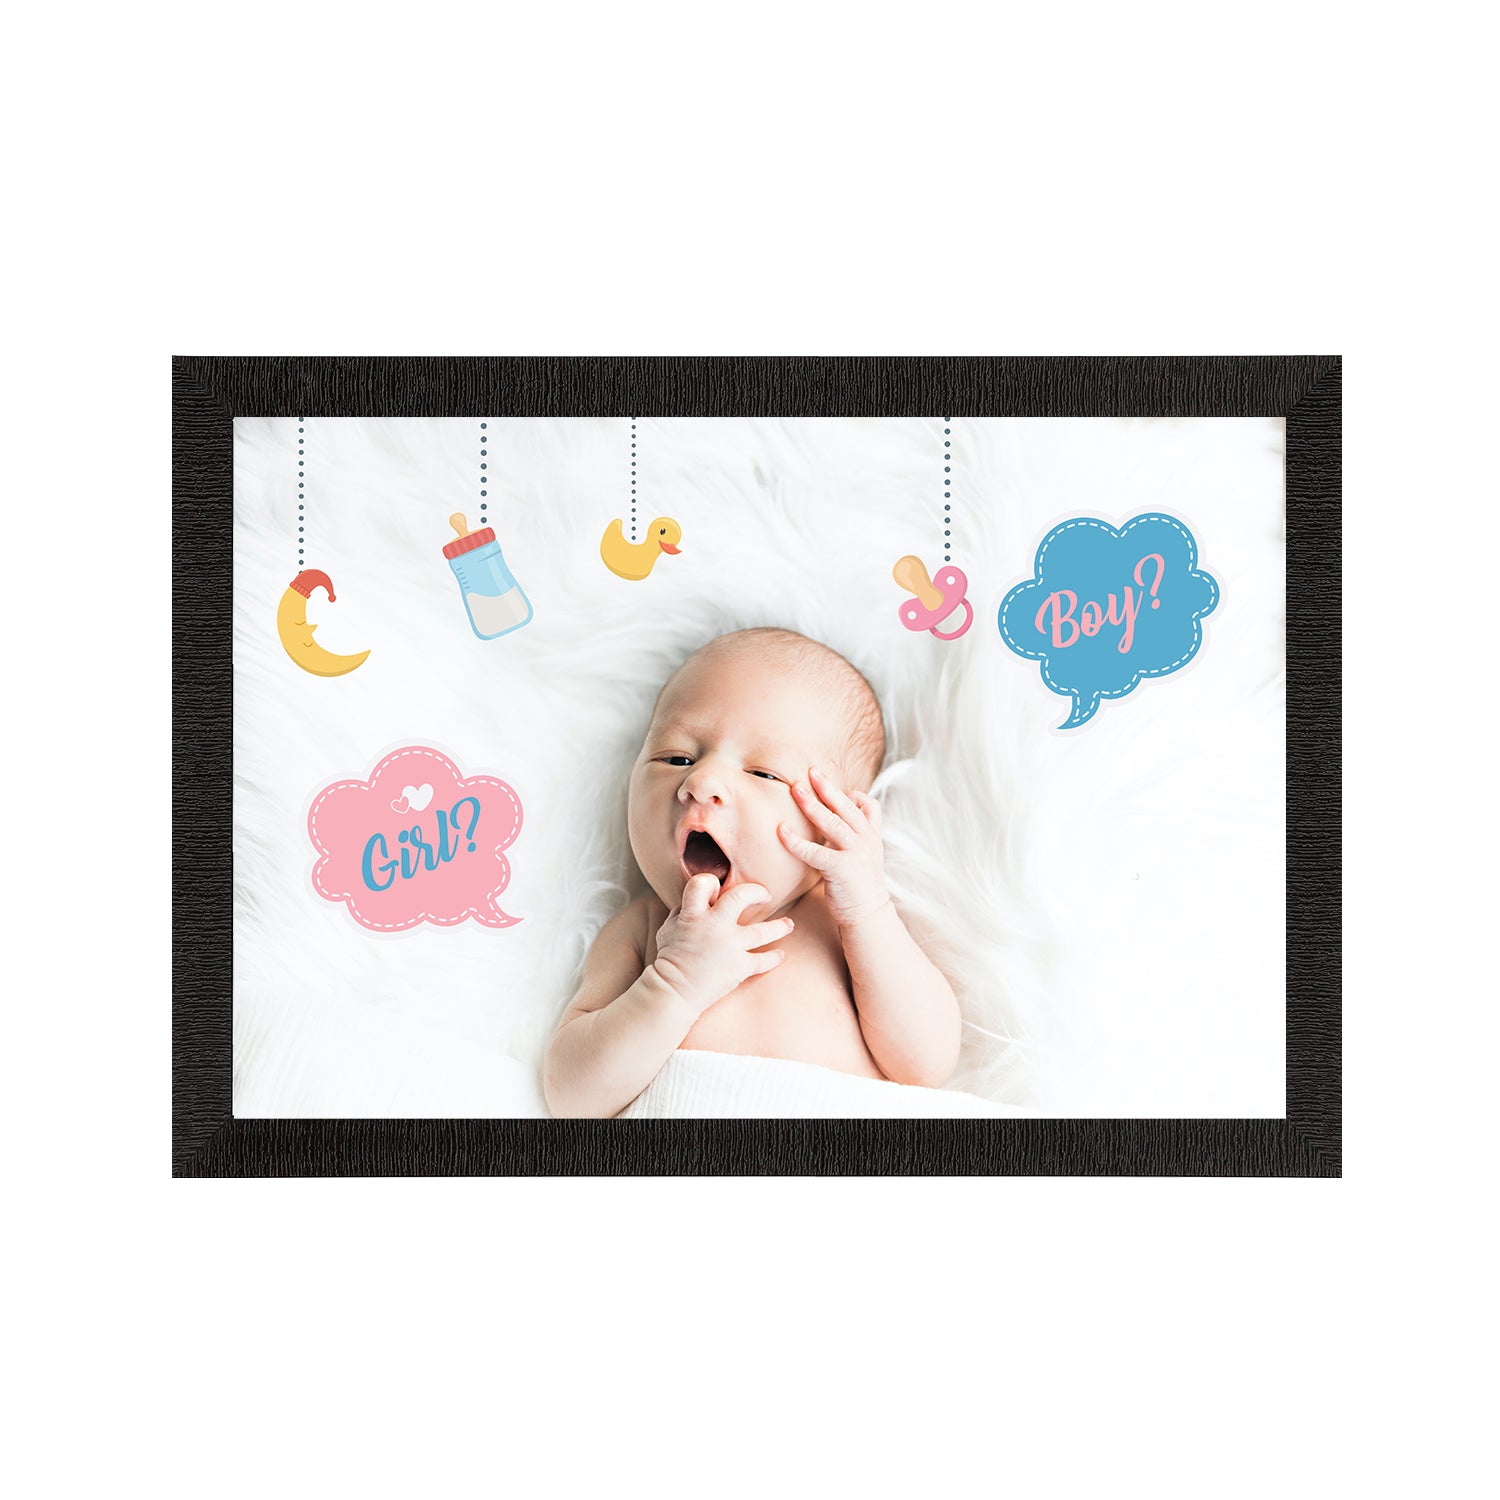 Cute Baby Painting Digital Printed Wall Art